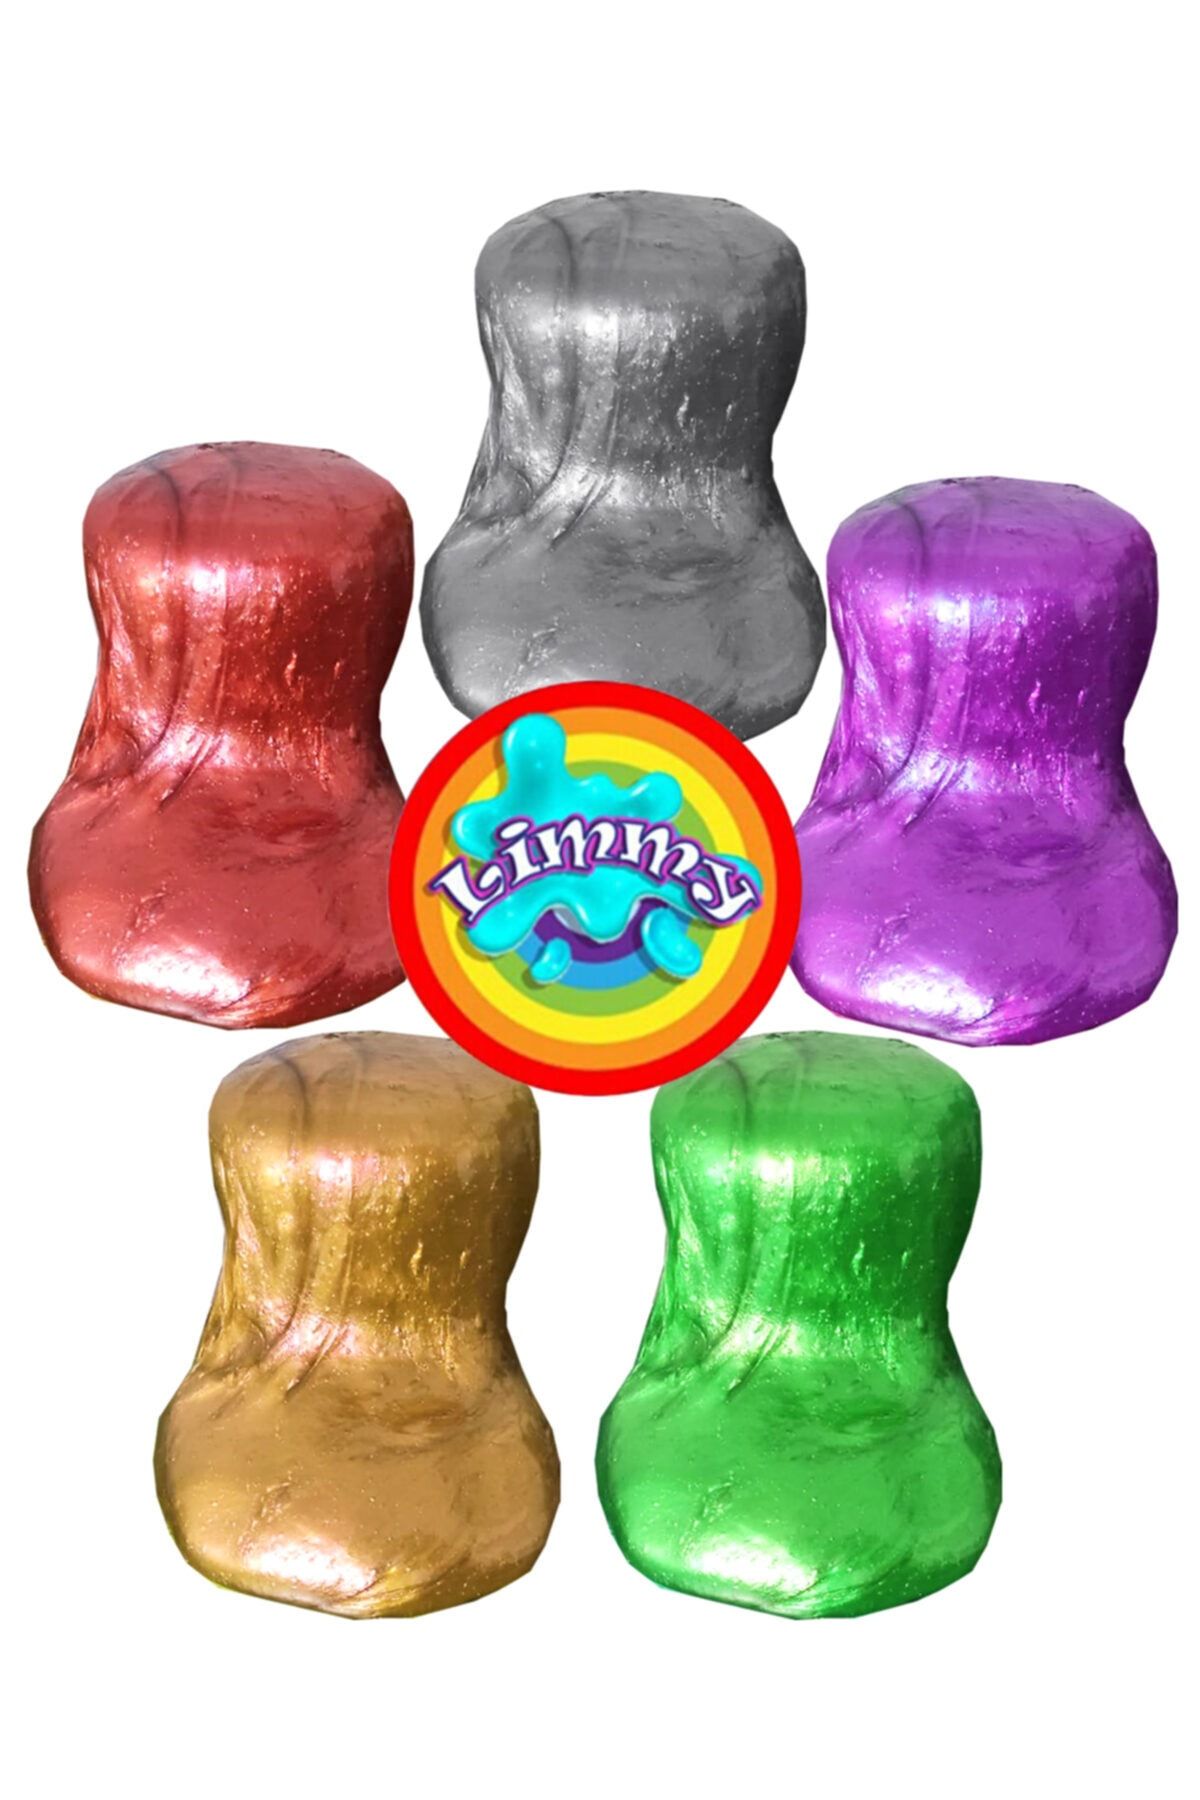 Limmy Slime Oyun Jeli Renkli Polymer Slime Eğitici Oyun Seti - 3 Adet